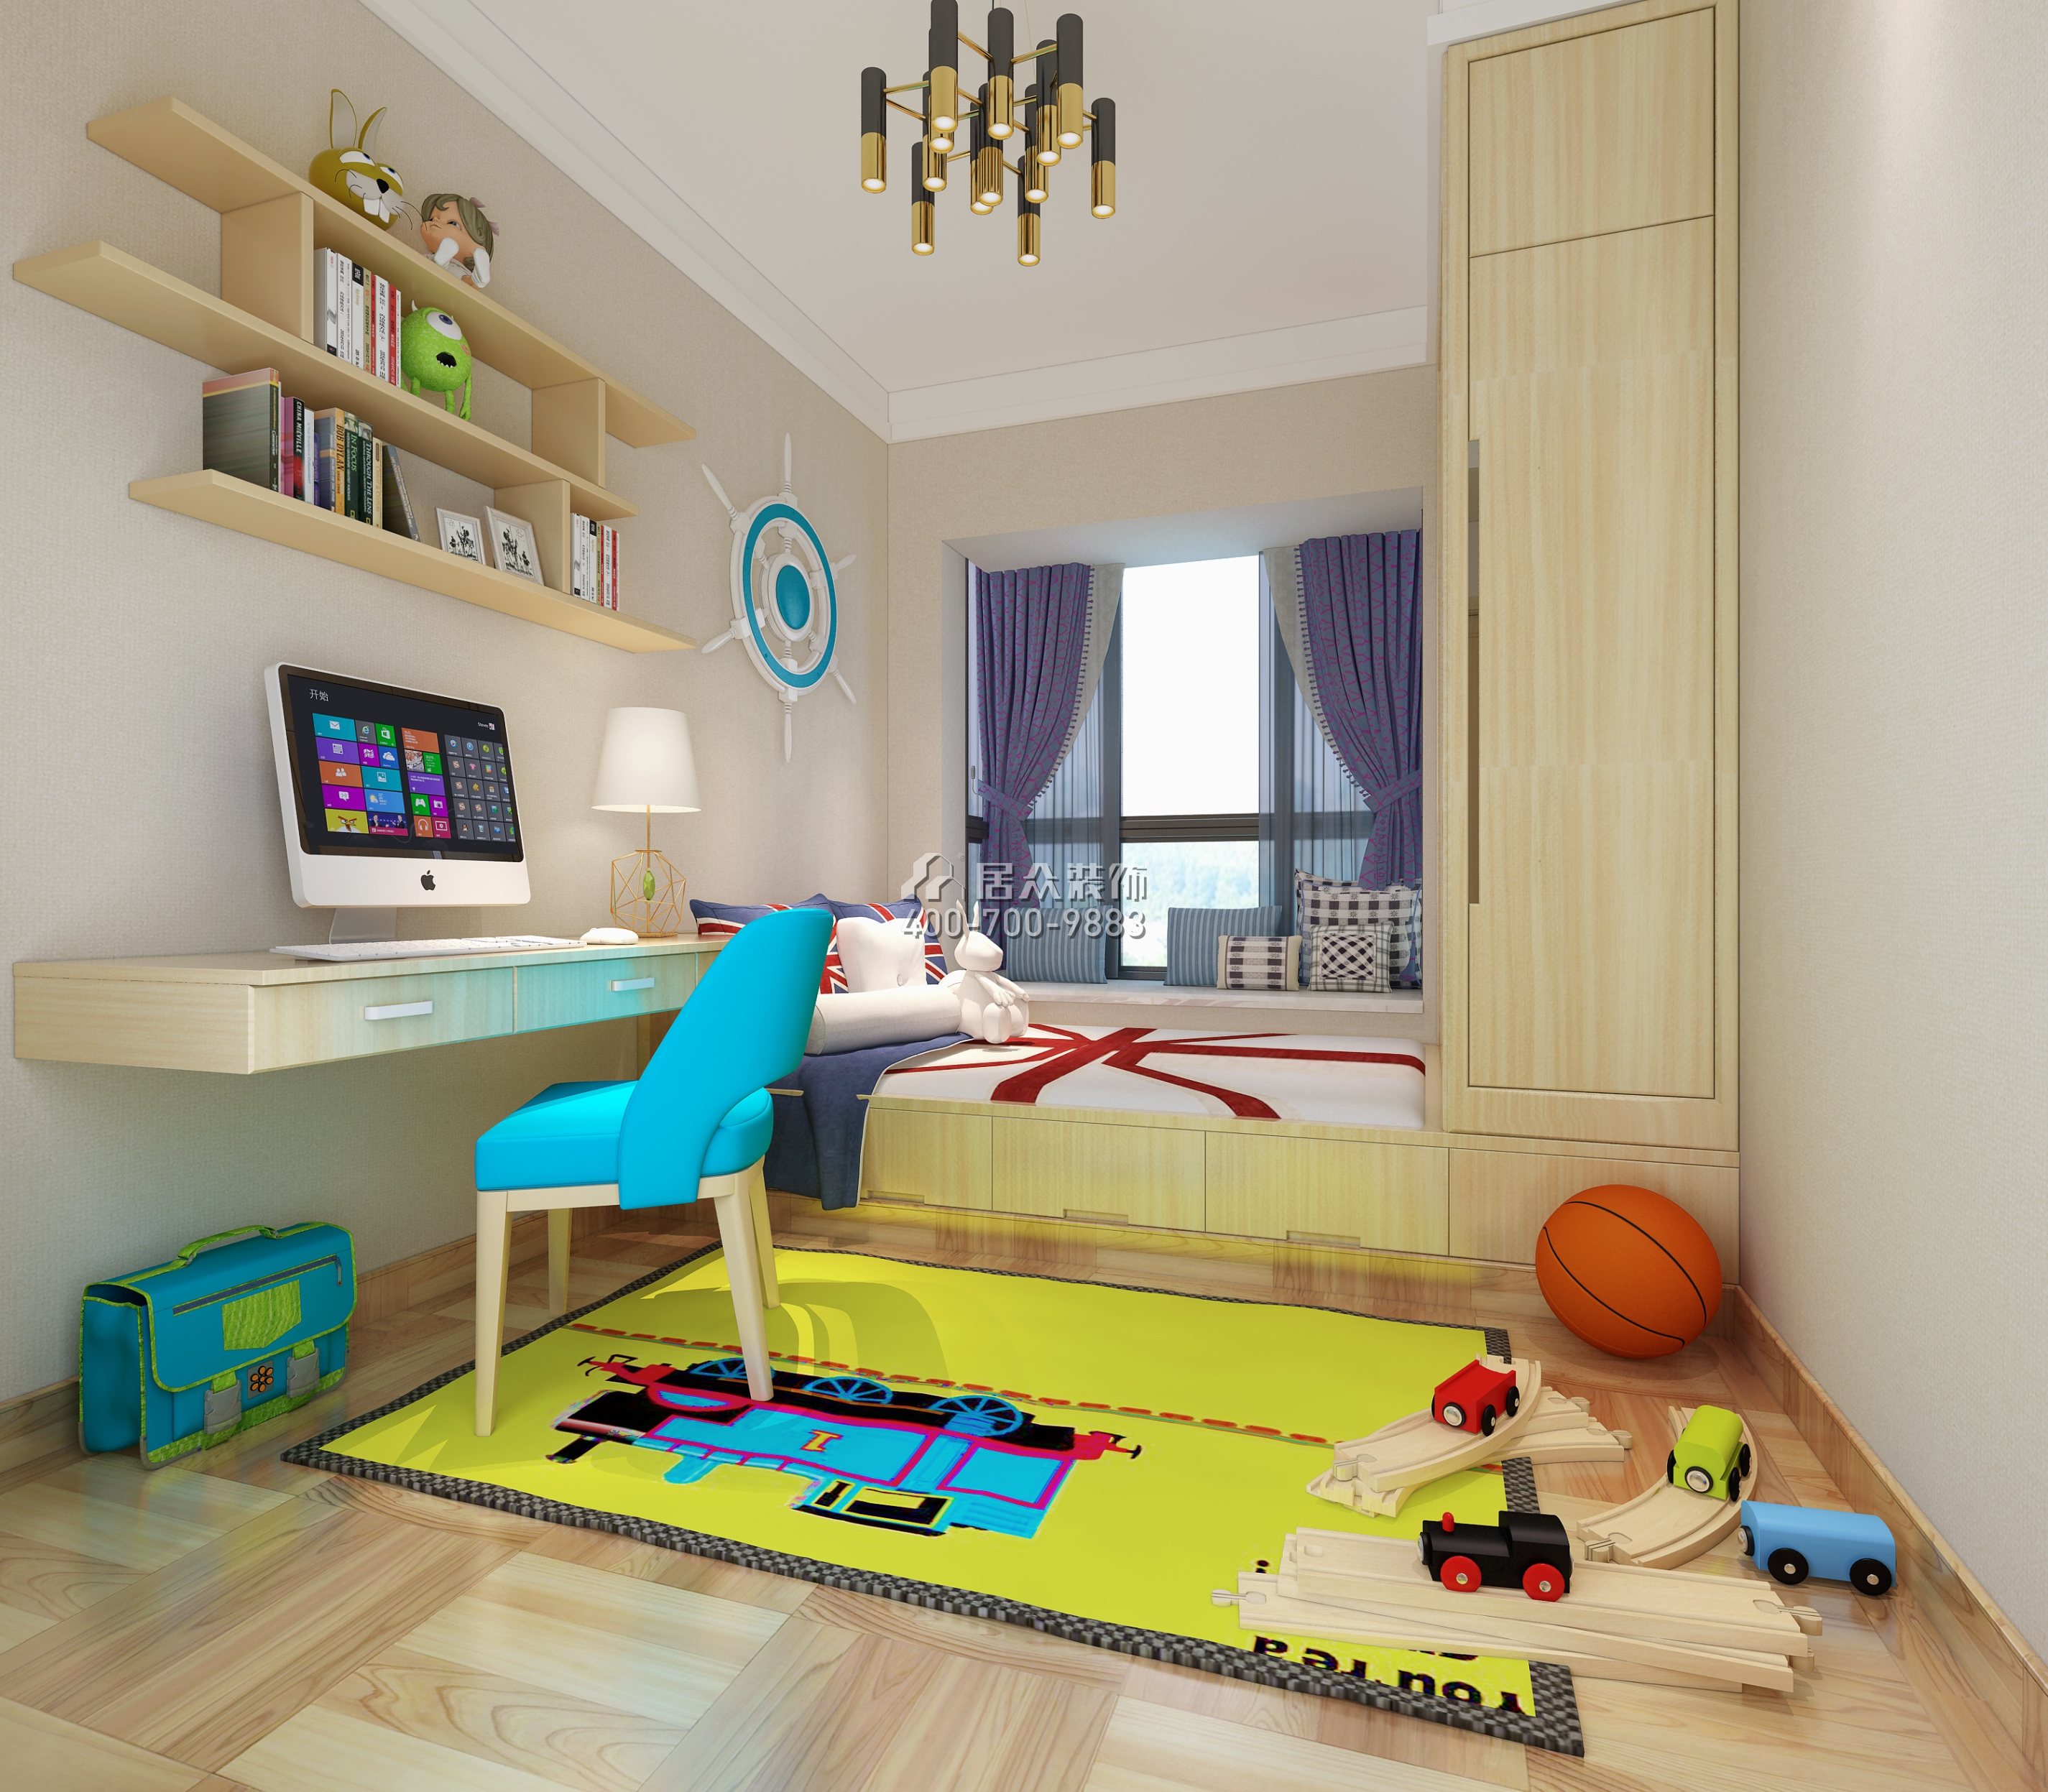 金域中央250平方米北欧风格复式户型儿童房装修效果图